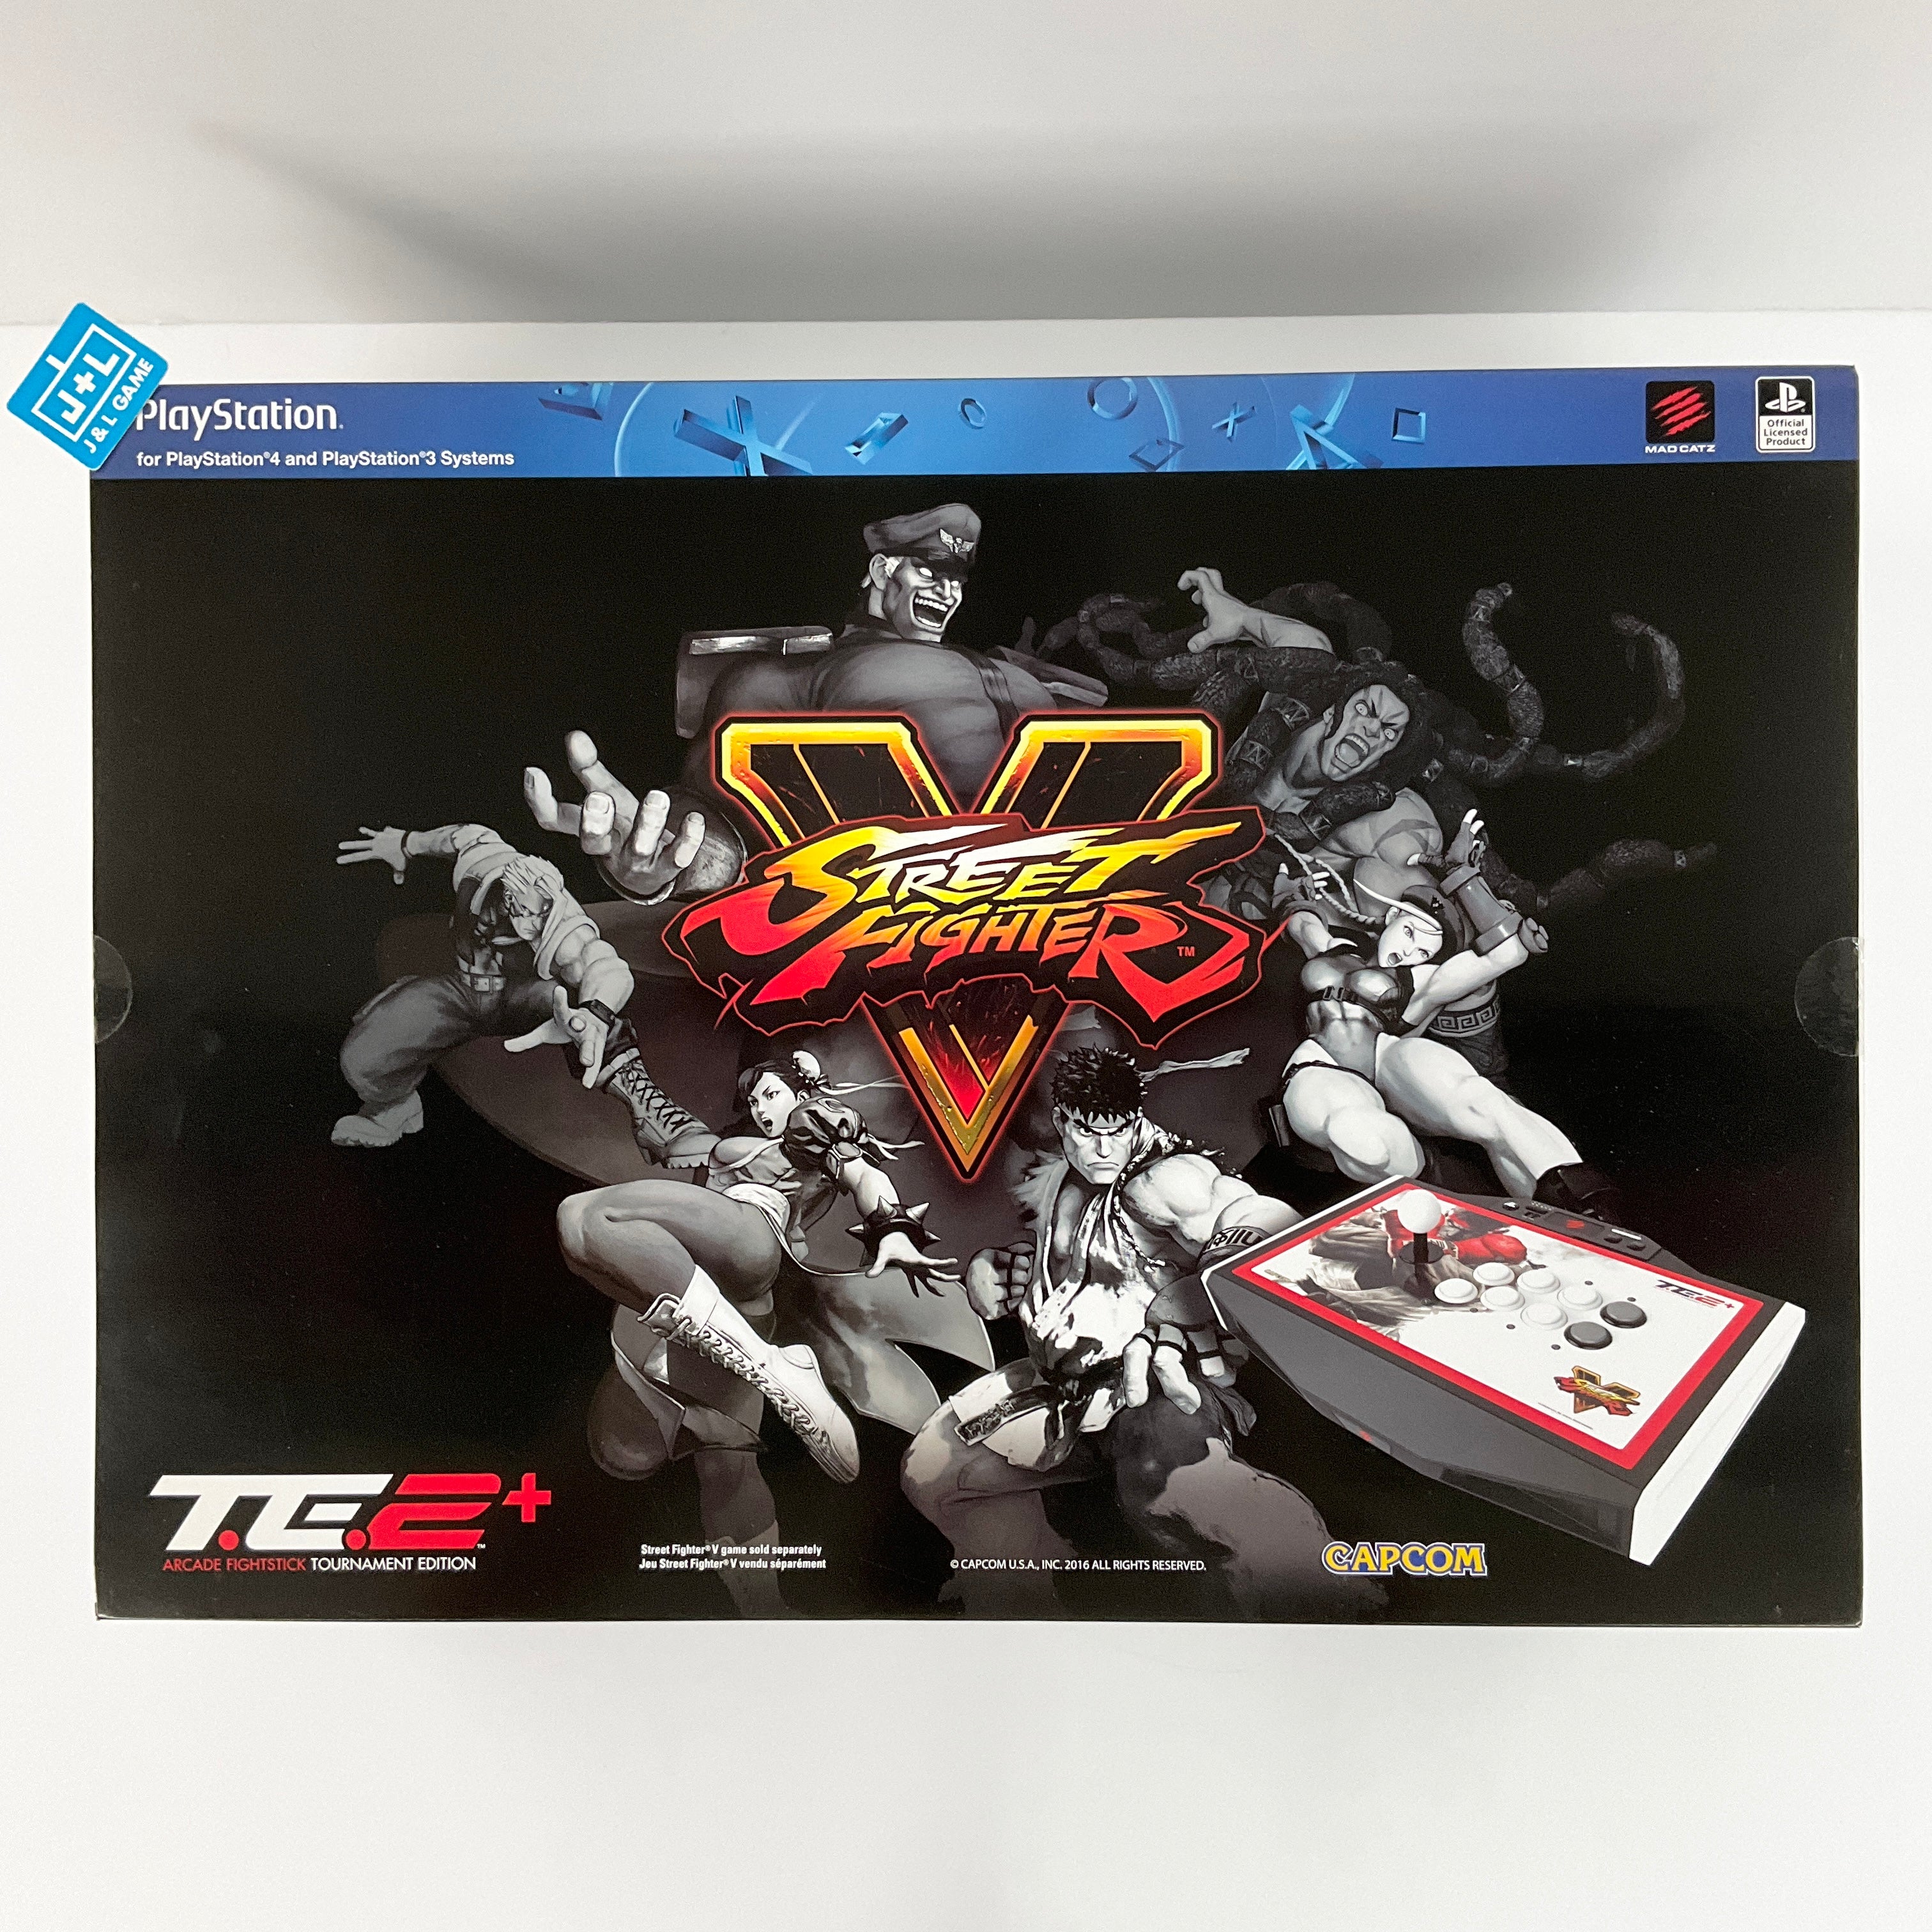 Mad Catz PlayStation 4 Street Fighter V Arcade FightStick TE2+ - PlayStation 4 and PlayStation 3 Accessories SONY   